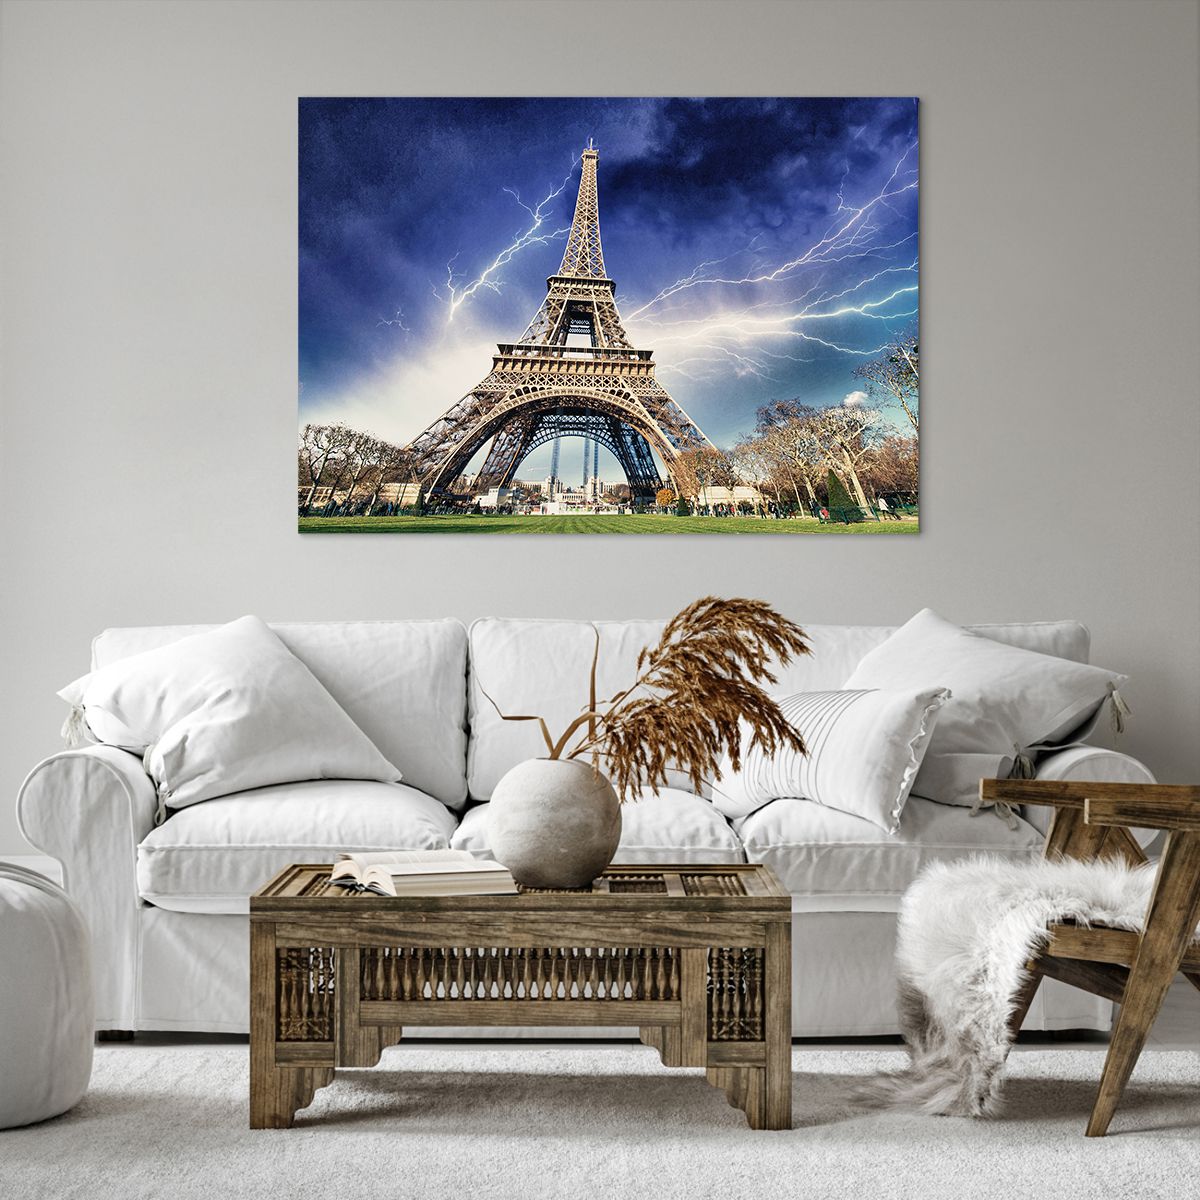 Impression sur toile Ville, Impression sur toile Paris, Impression sur toile Tour Eiffel, Impression sur toile Architecture, Impression sur toile Tempête